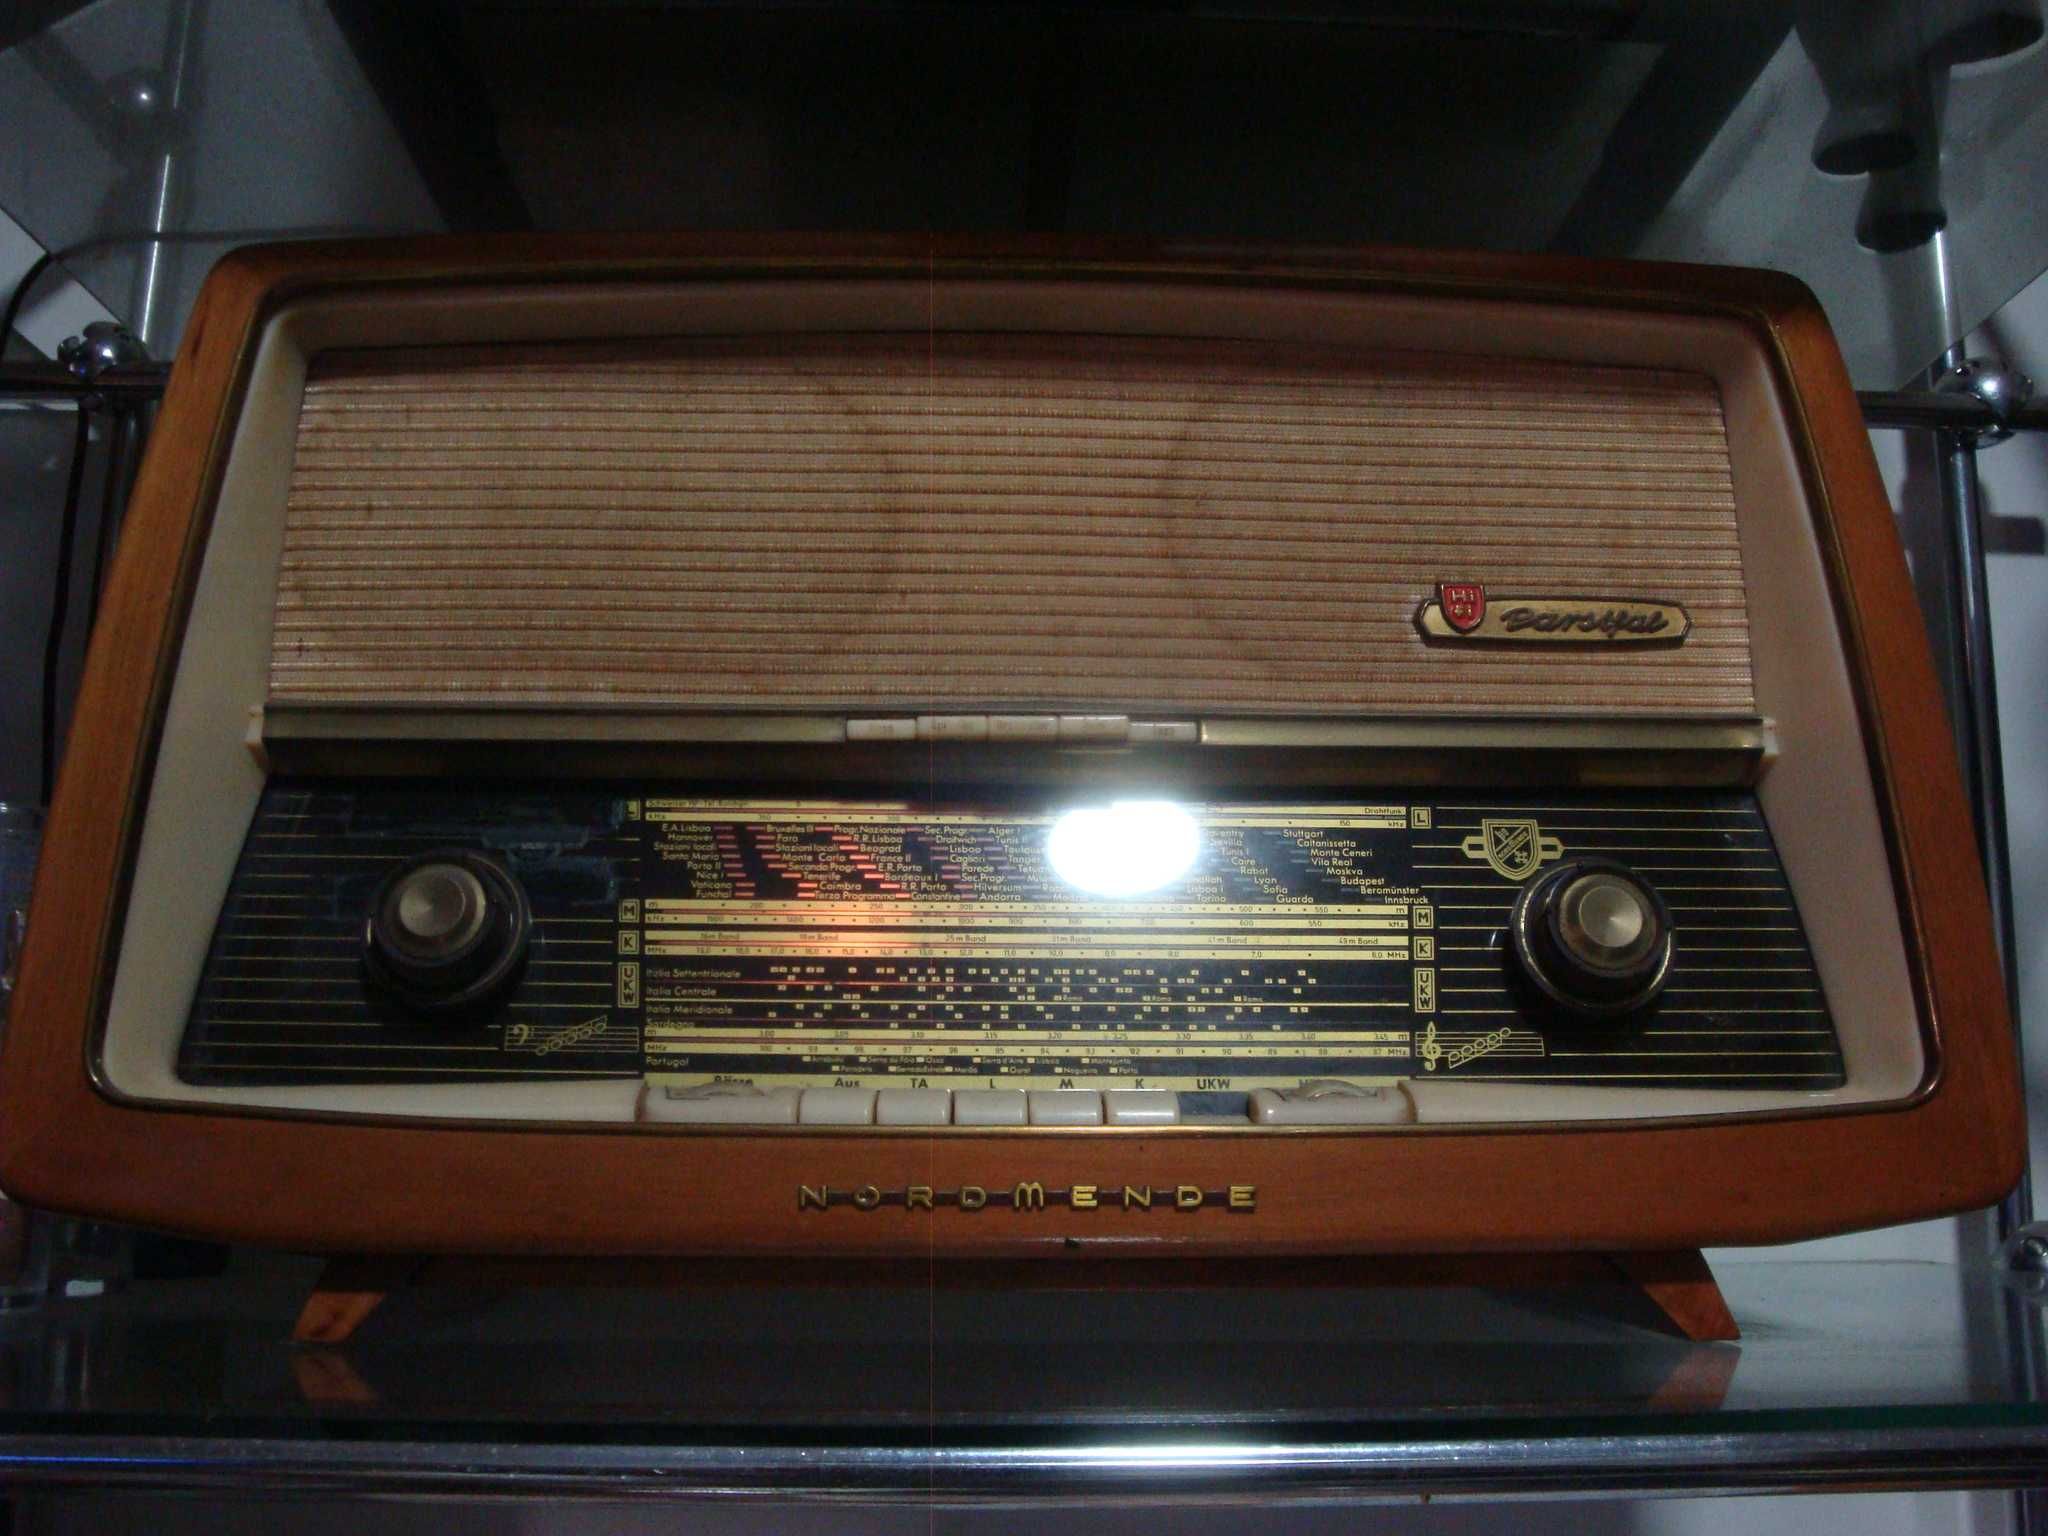 Radio de válvulas Nordemende